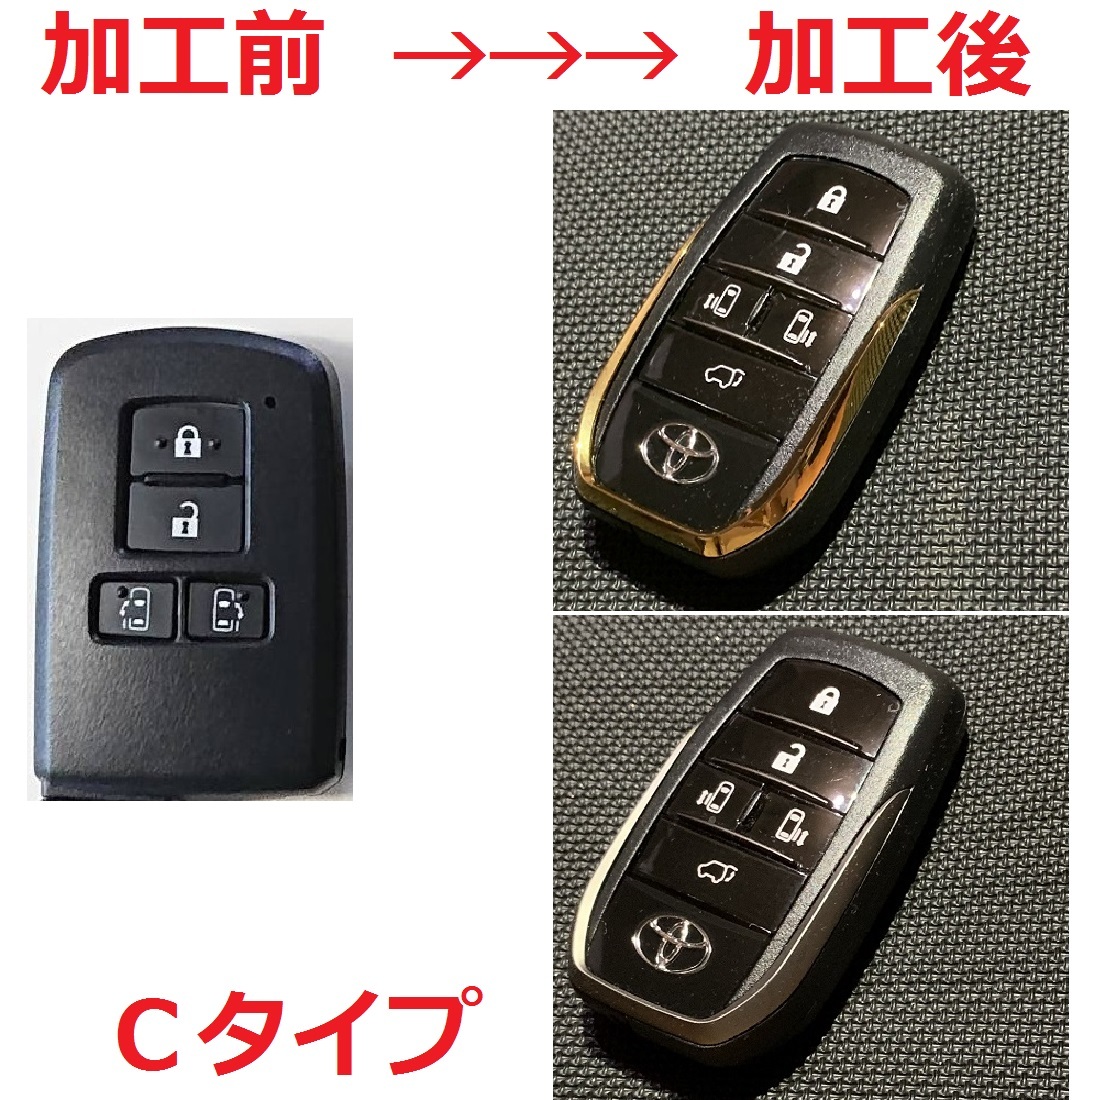  Toyota "умный" ключ восстановленный действующий способ swap обработка Alphard Vellfire 271451-0751 271451-6221 271451-0500 271451-6230